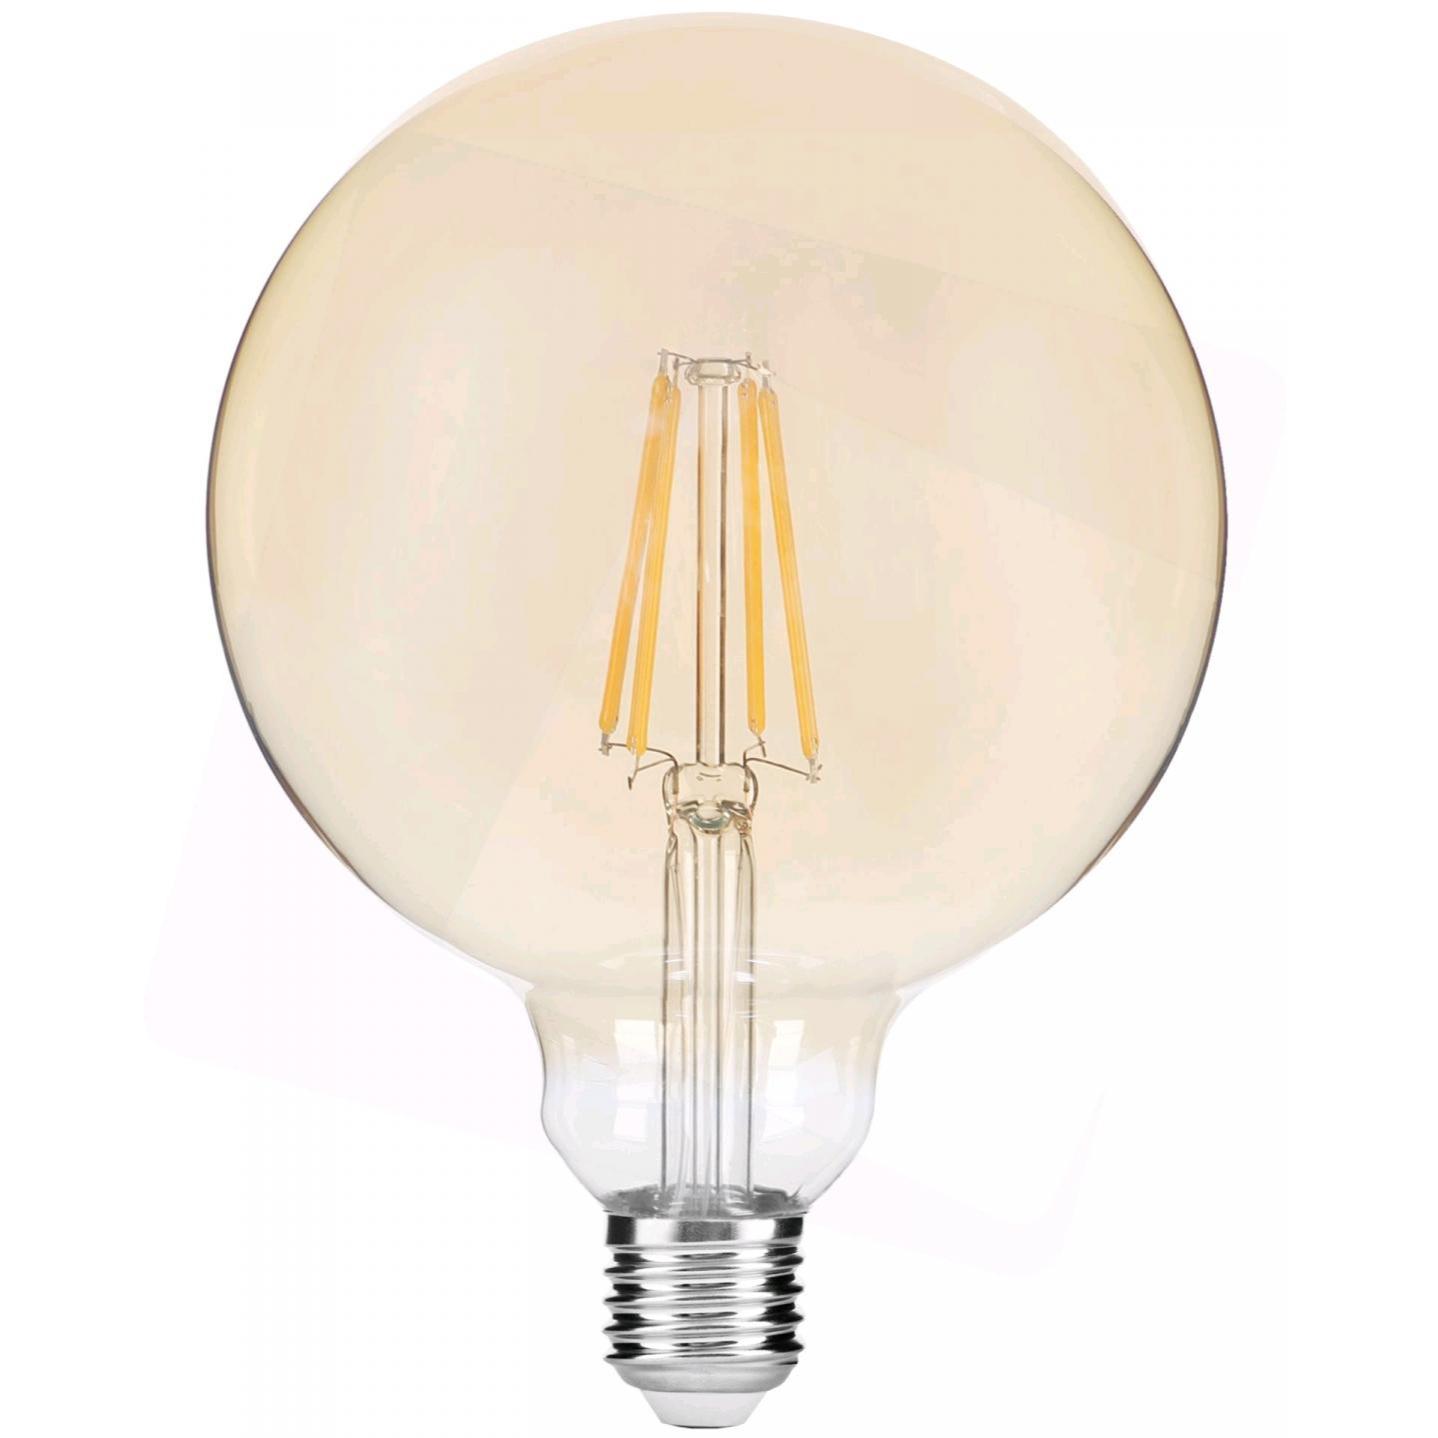 E27 led lamp - Type: E27 Lamptype: Led Vermogen: 8 Watt 230 Volt Lichtsterkte: 725 lumen Extra warm wit